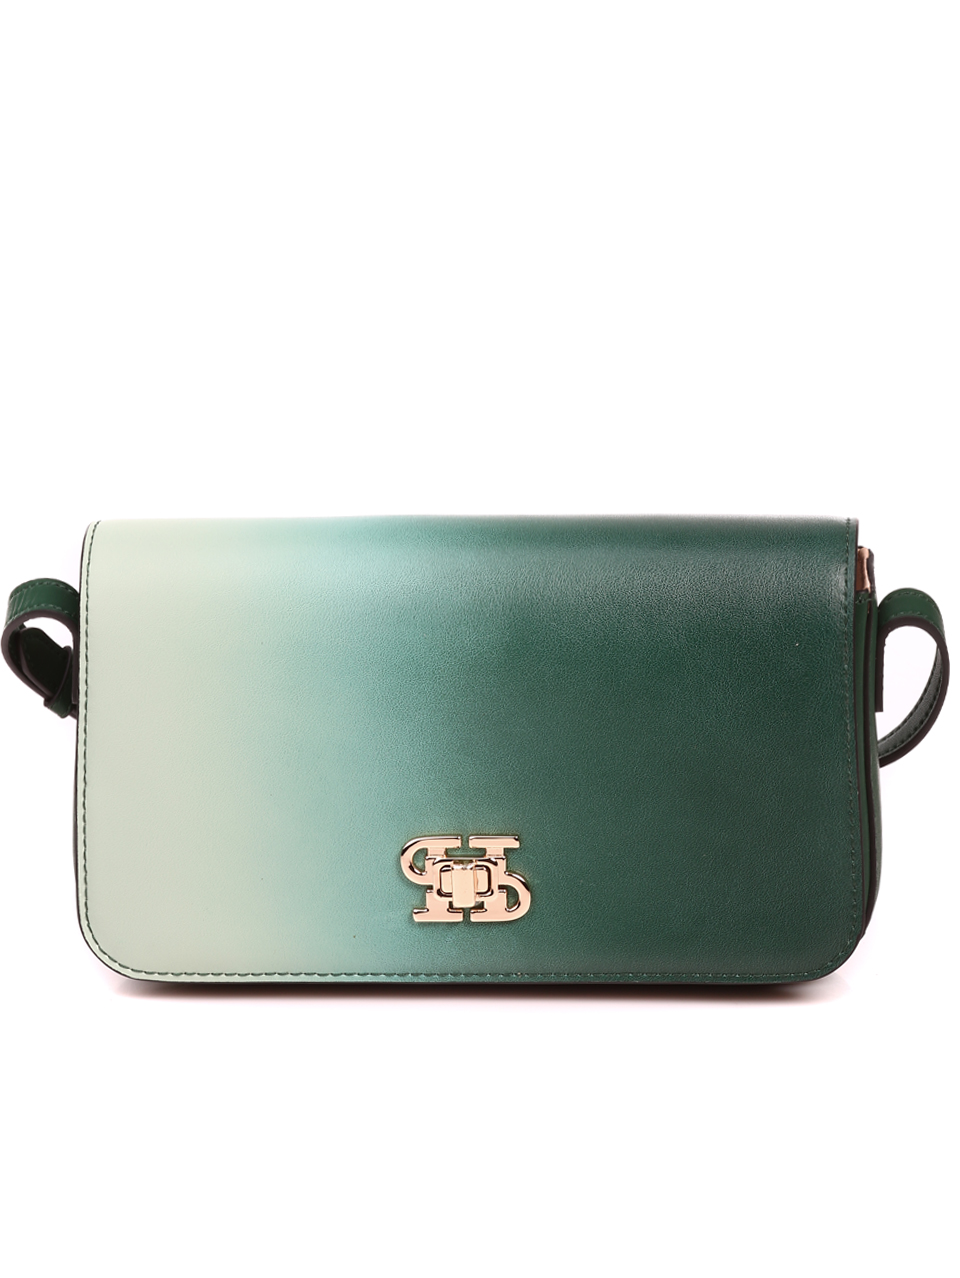 Елегантна дамска чанта в зелено от естествена кожа P20989 green